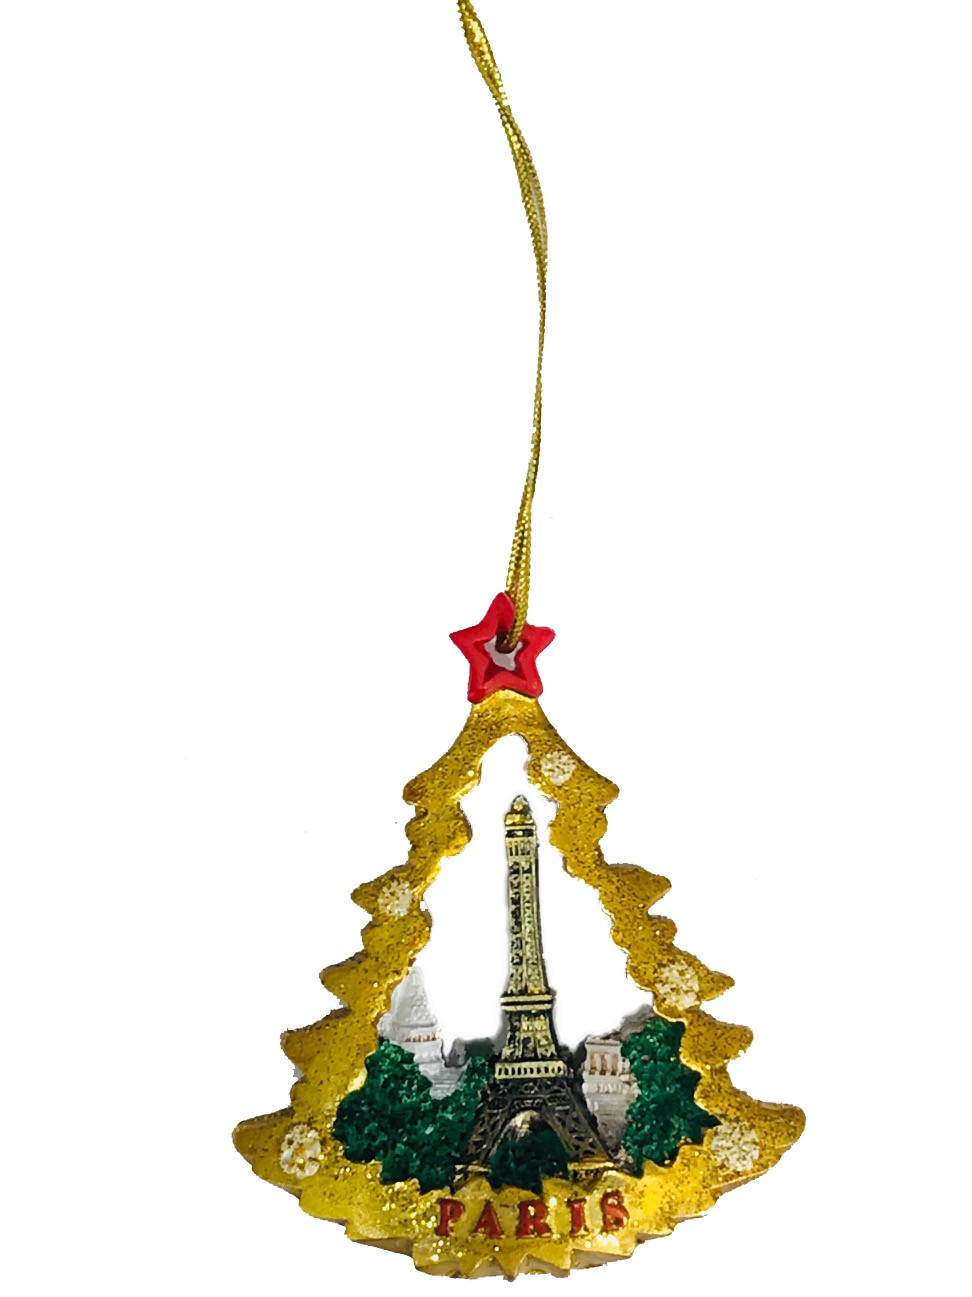 Ornement de Noël représentant la Tour Eiffel dorée sur un sapin, symbole festif de Paris. Souvenir Paris